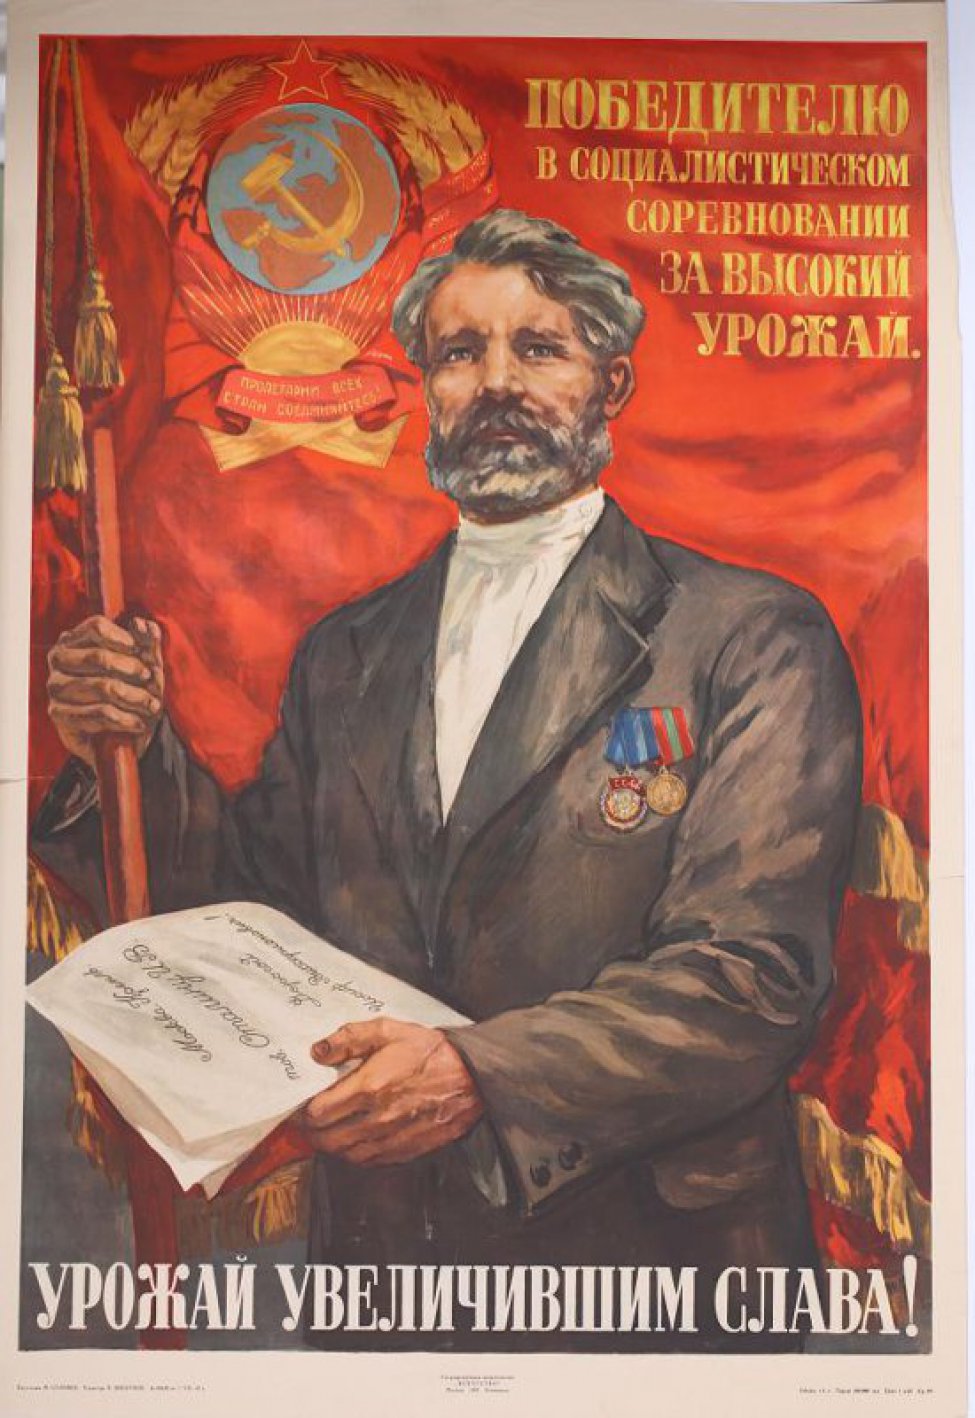 Изображен колхозник- орденоносец на фоне красного знамени с гербом  РСФСР и надписью. Правой рукой он держит древко знамени, в левой руке его- письмо  т.Сталину.